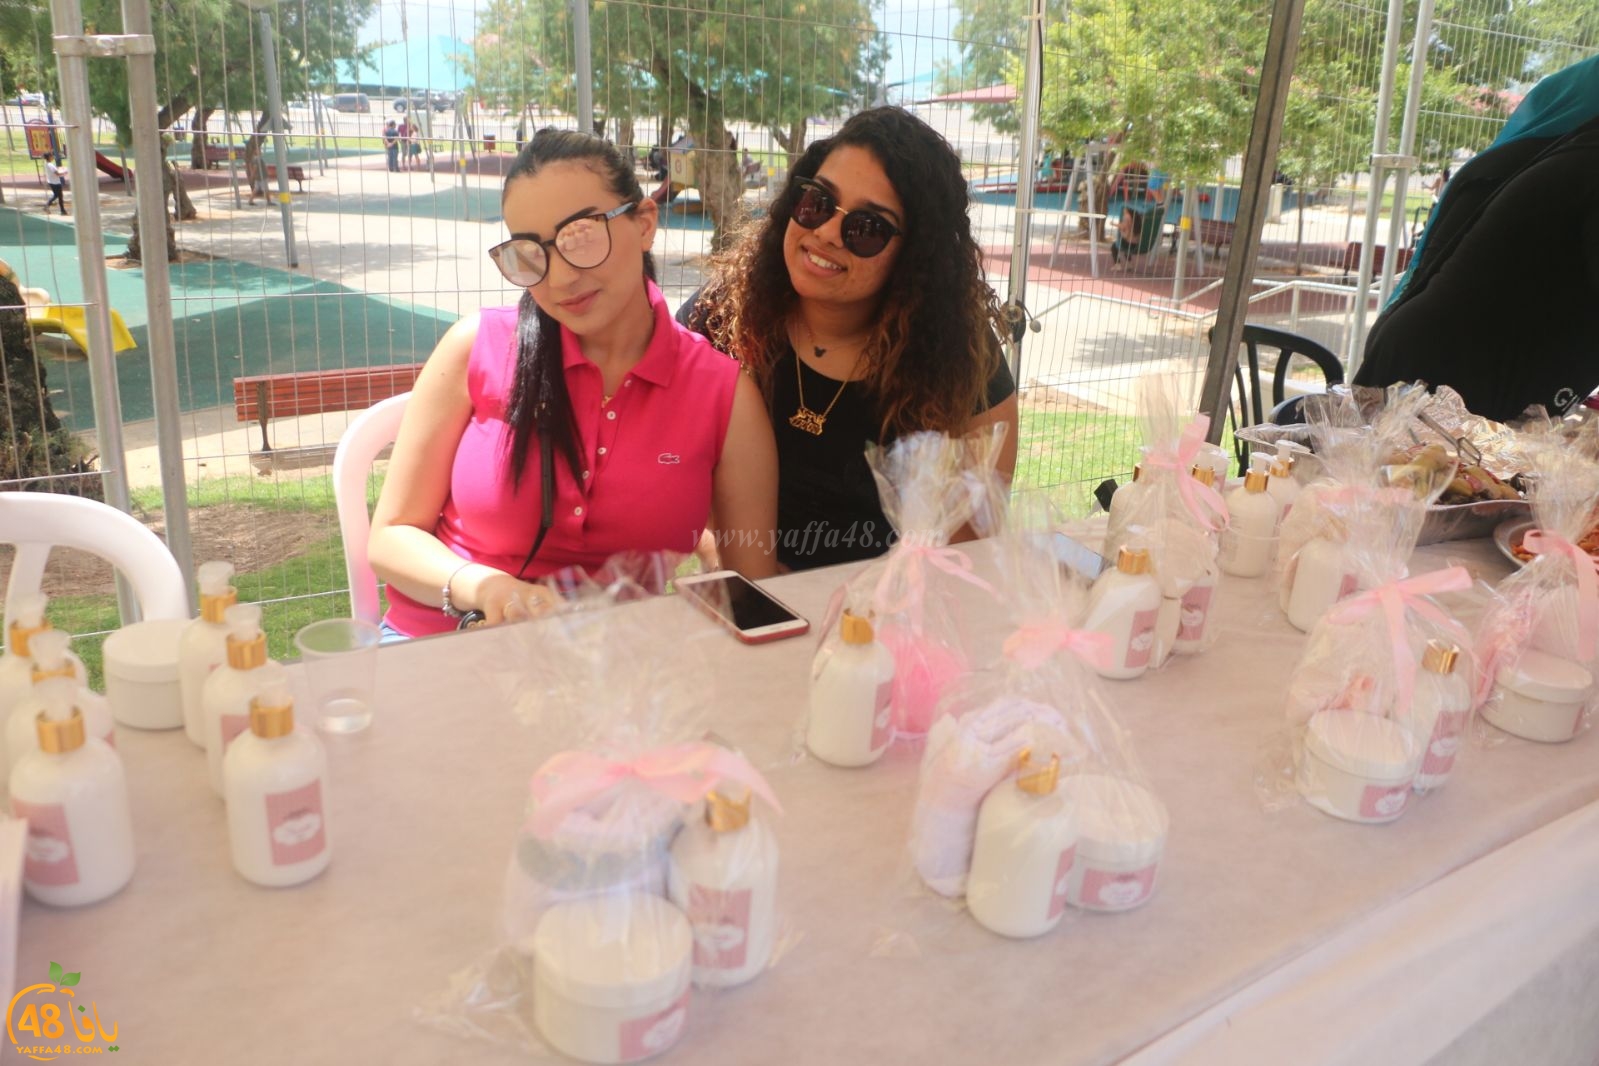  بالصور: فعاليات شيّقة للأطفال وأكشاك بيع في البازار النسائي السنوي بيافا